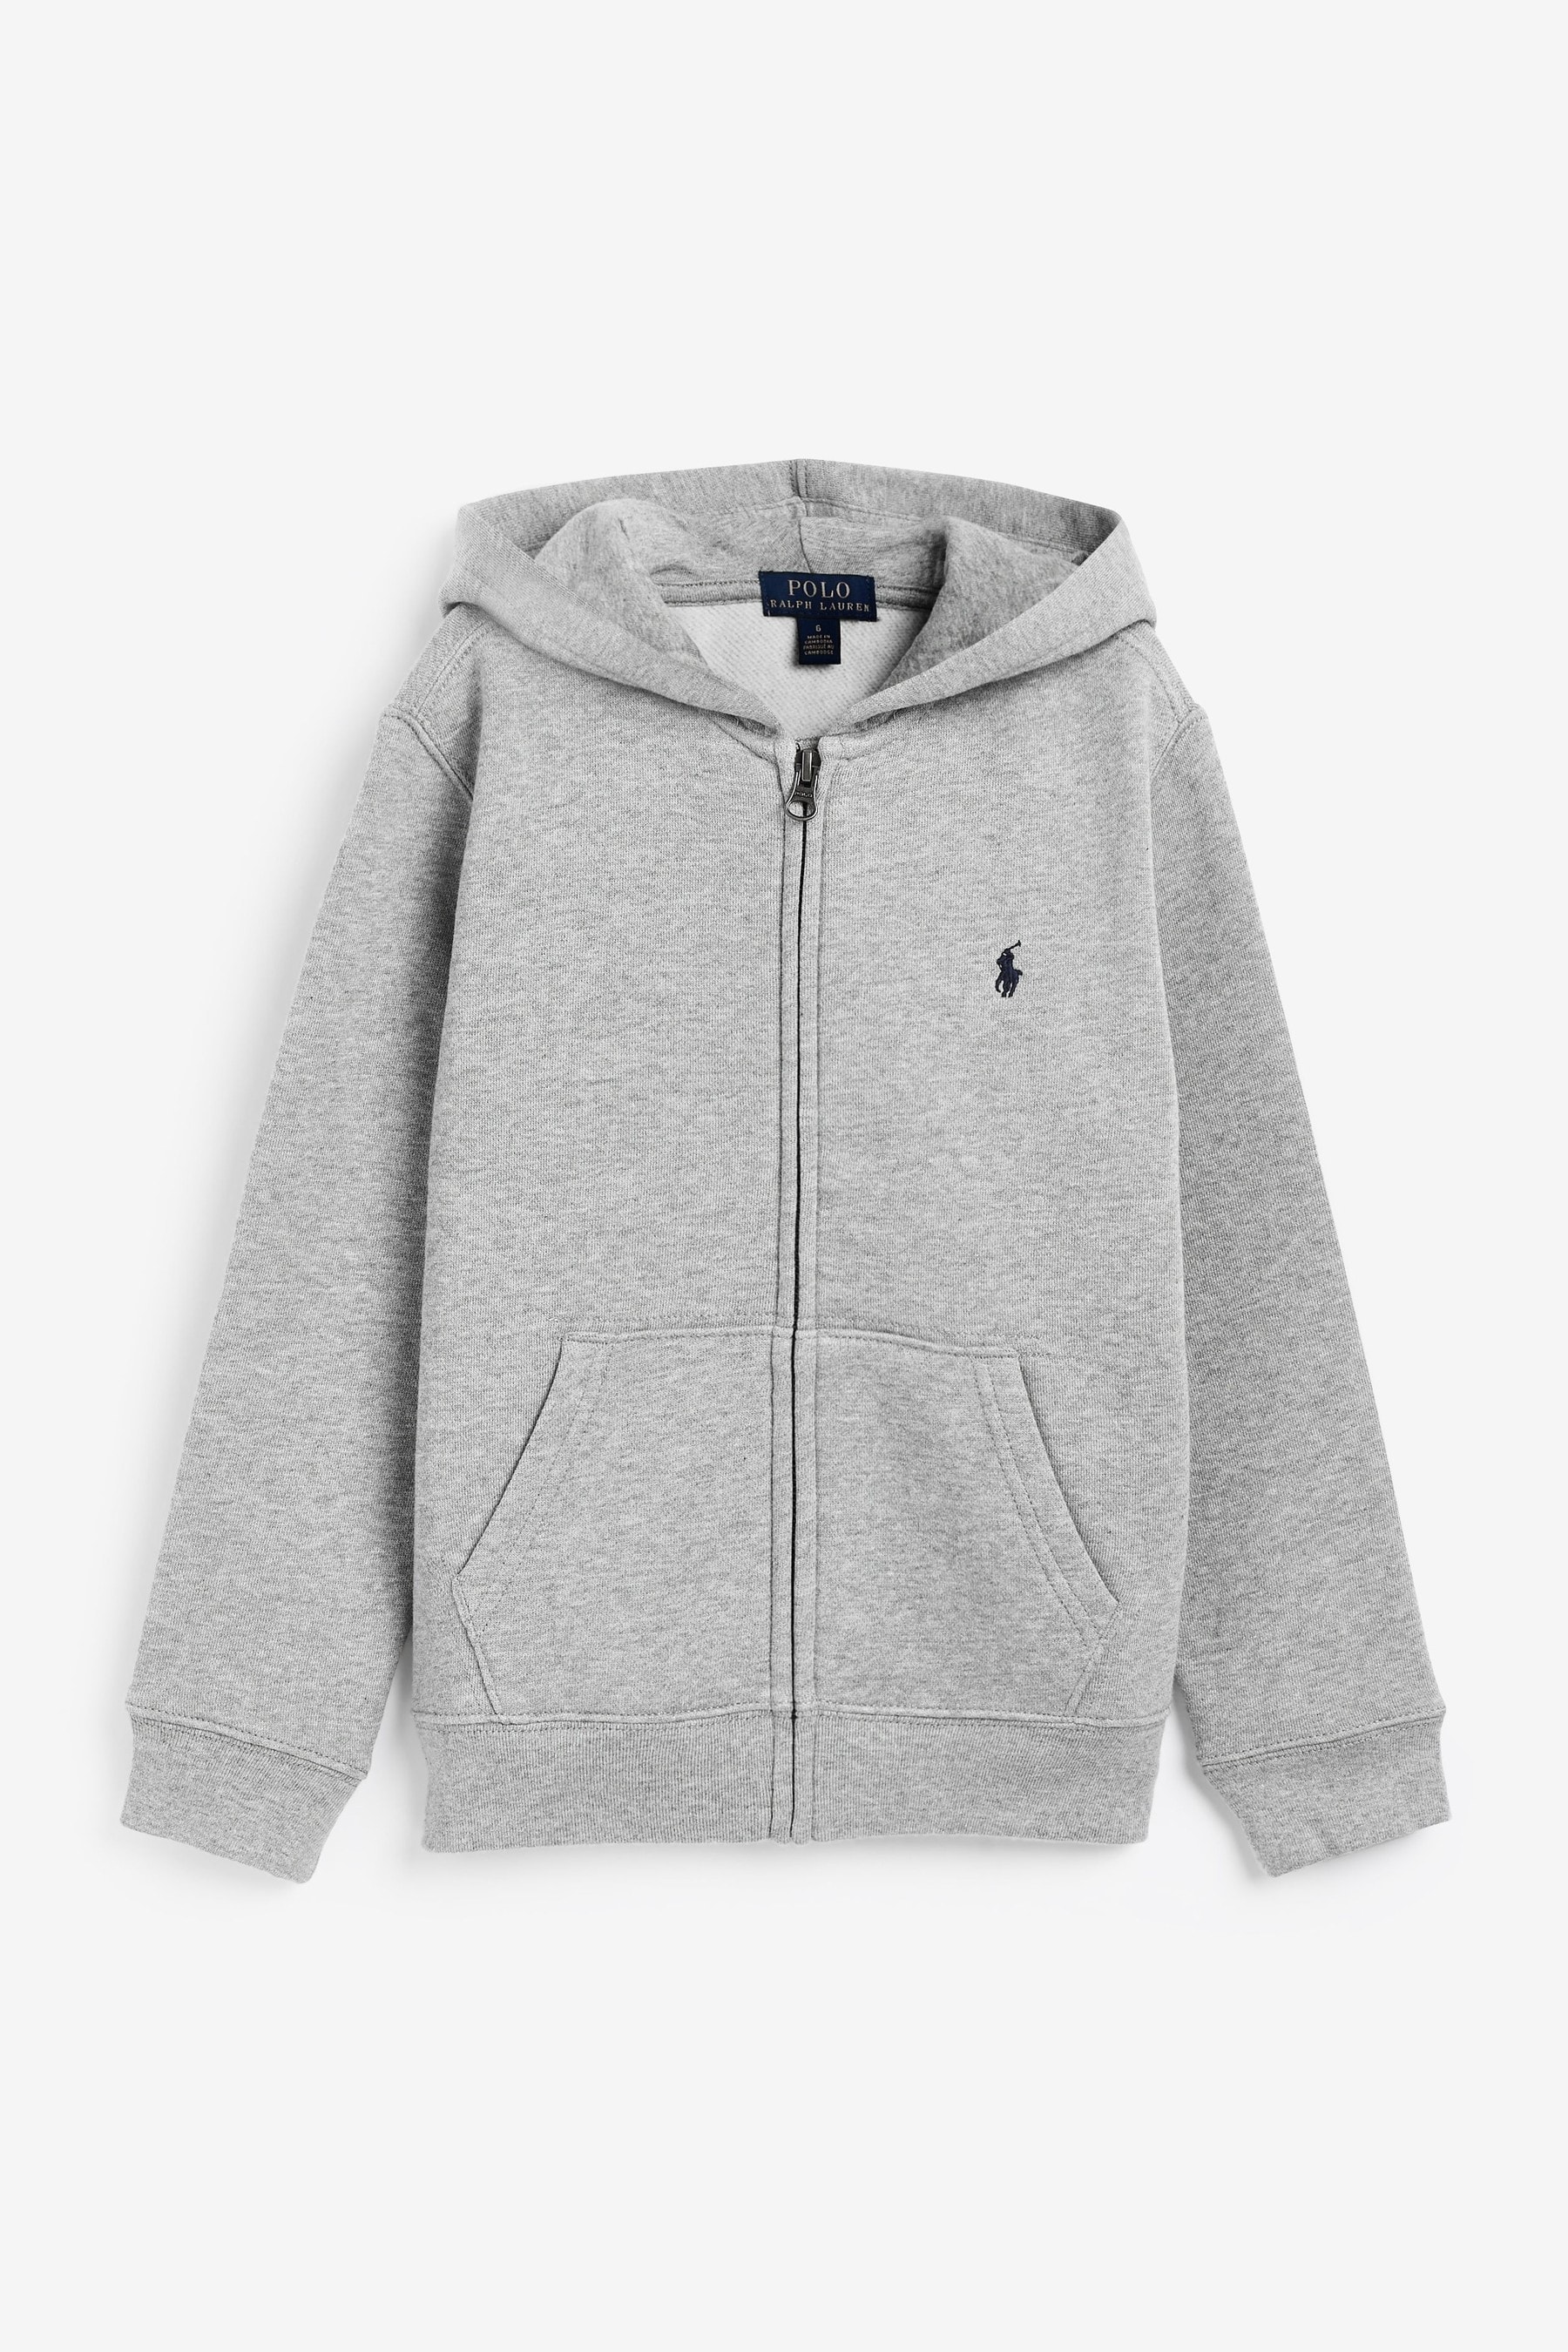 Buy Polo Ralph Lauren Grey Zip Up Logo Hoodie from the Next UK online shop